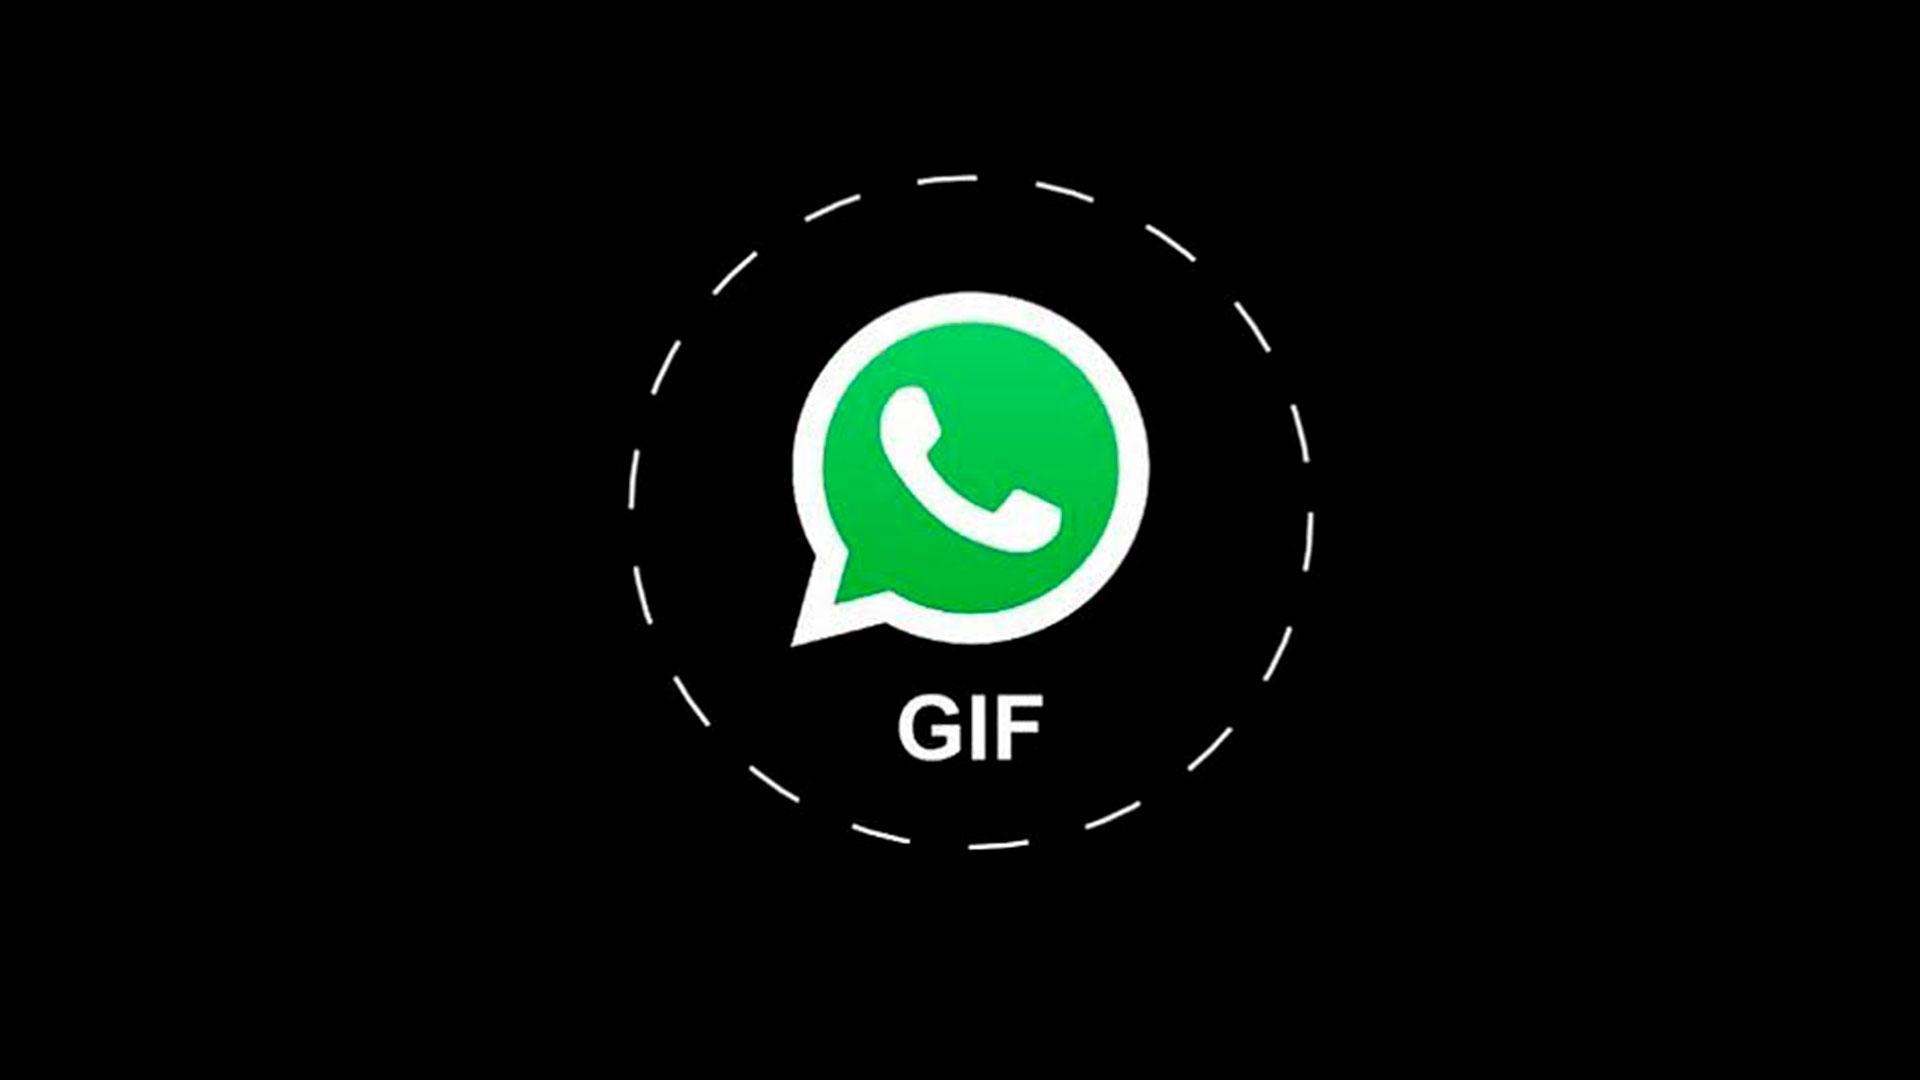 WhatsApp tem recurso secreto para mandar gifs animados na versão